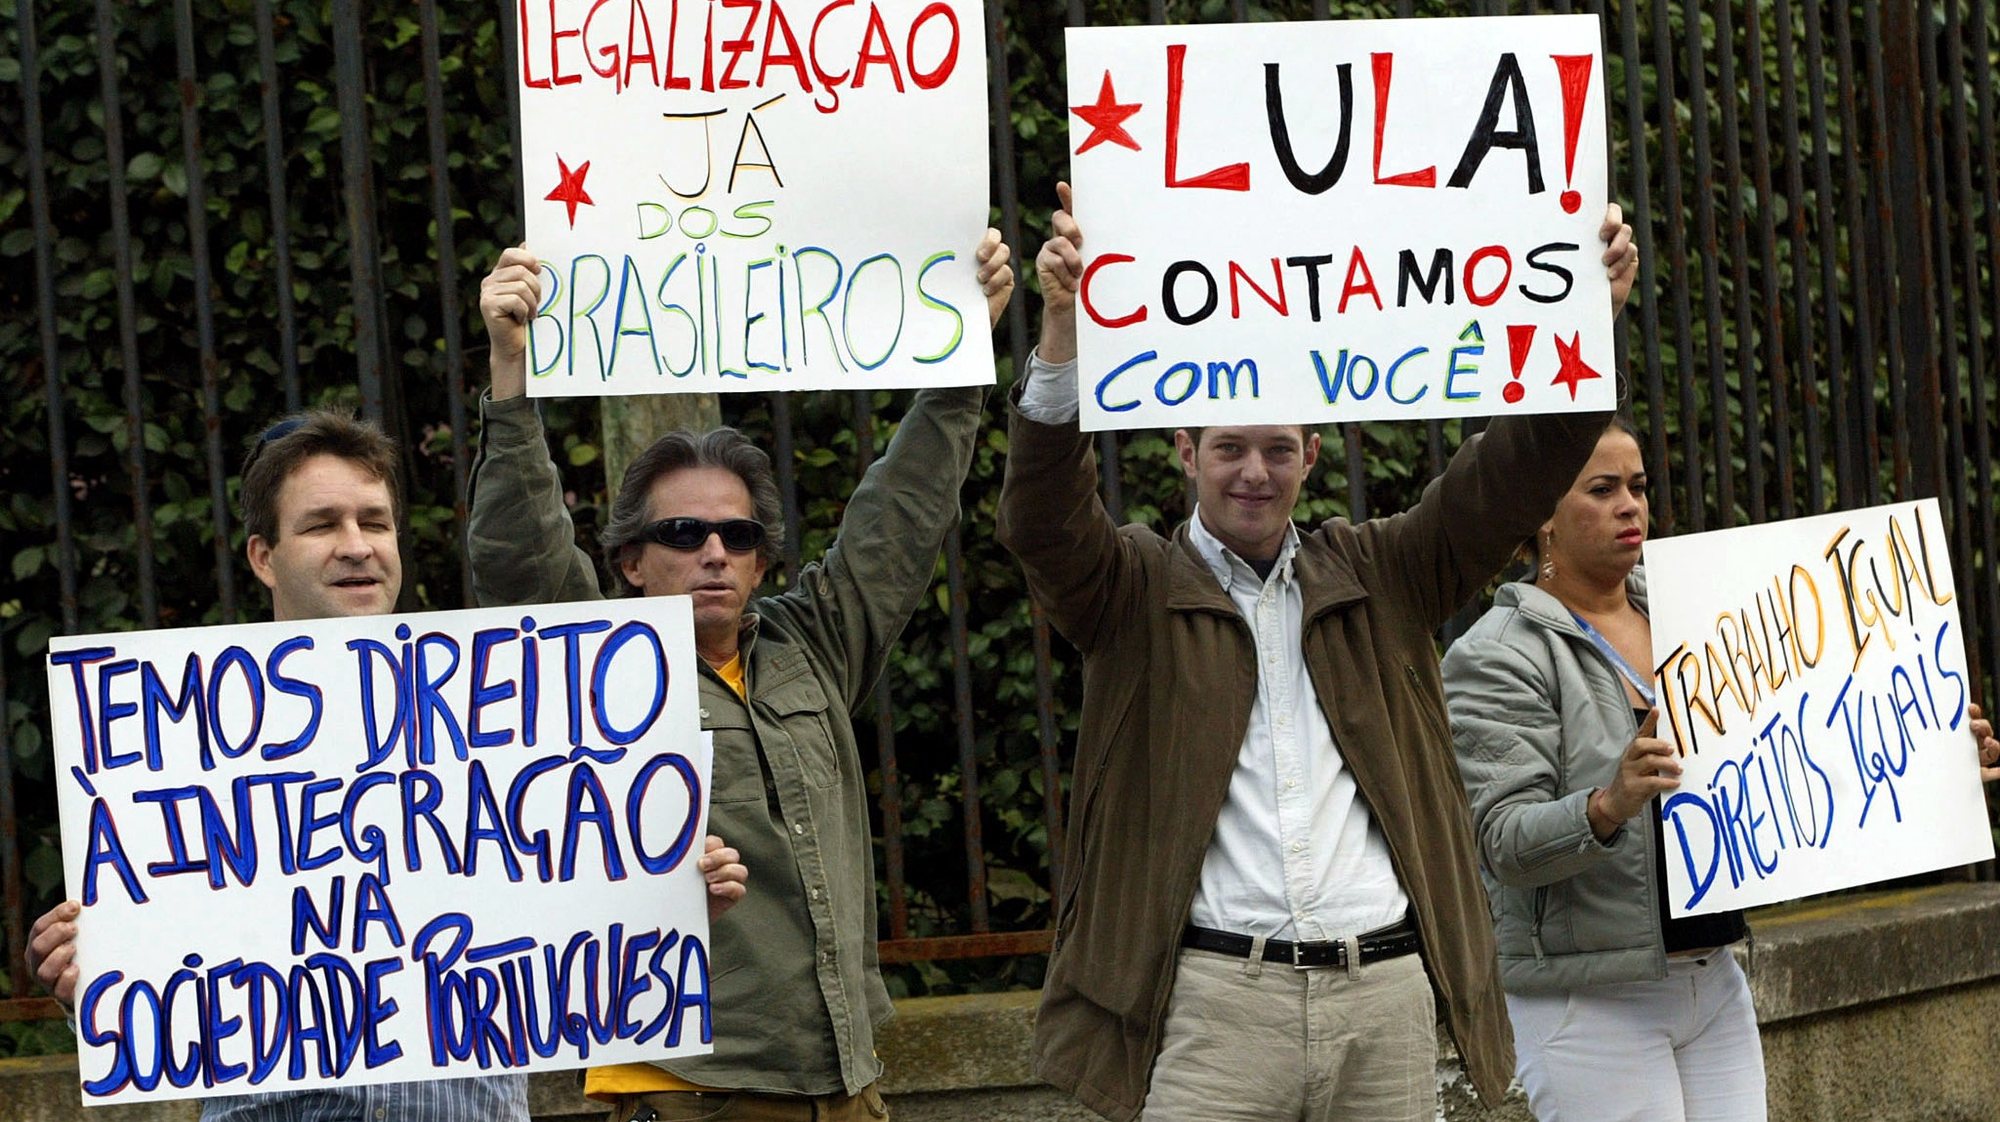 ES07:200501013: PORTO: Manifestacao de imigrantes brasileiros frente a Fundacao de Serralves onde decorre a Cimeira Luso-Brasileira, esta manha, no Porto. ESTELA SILVA / LUSA